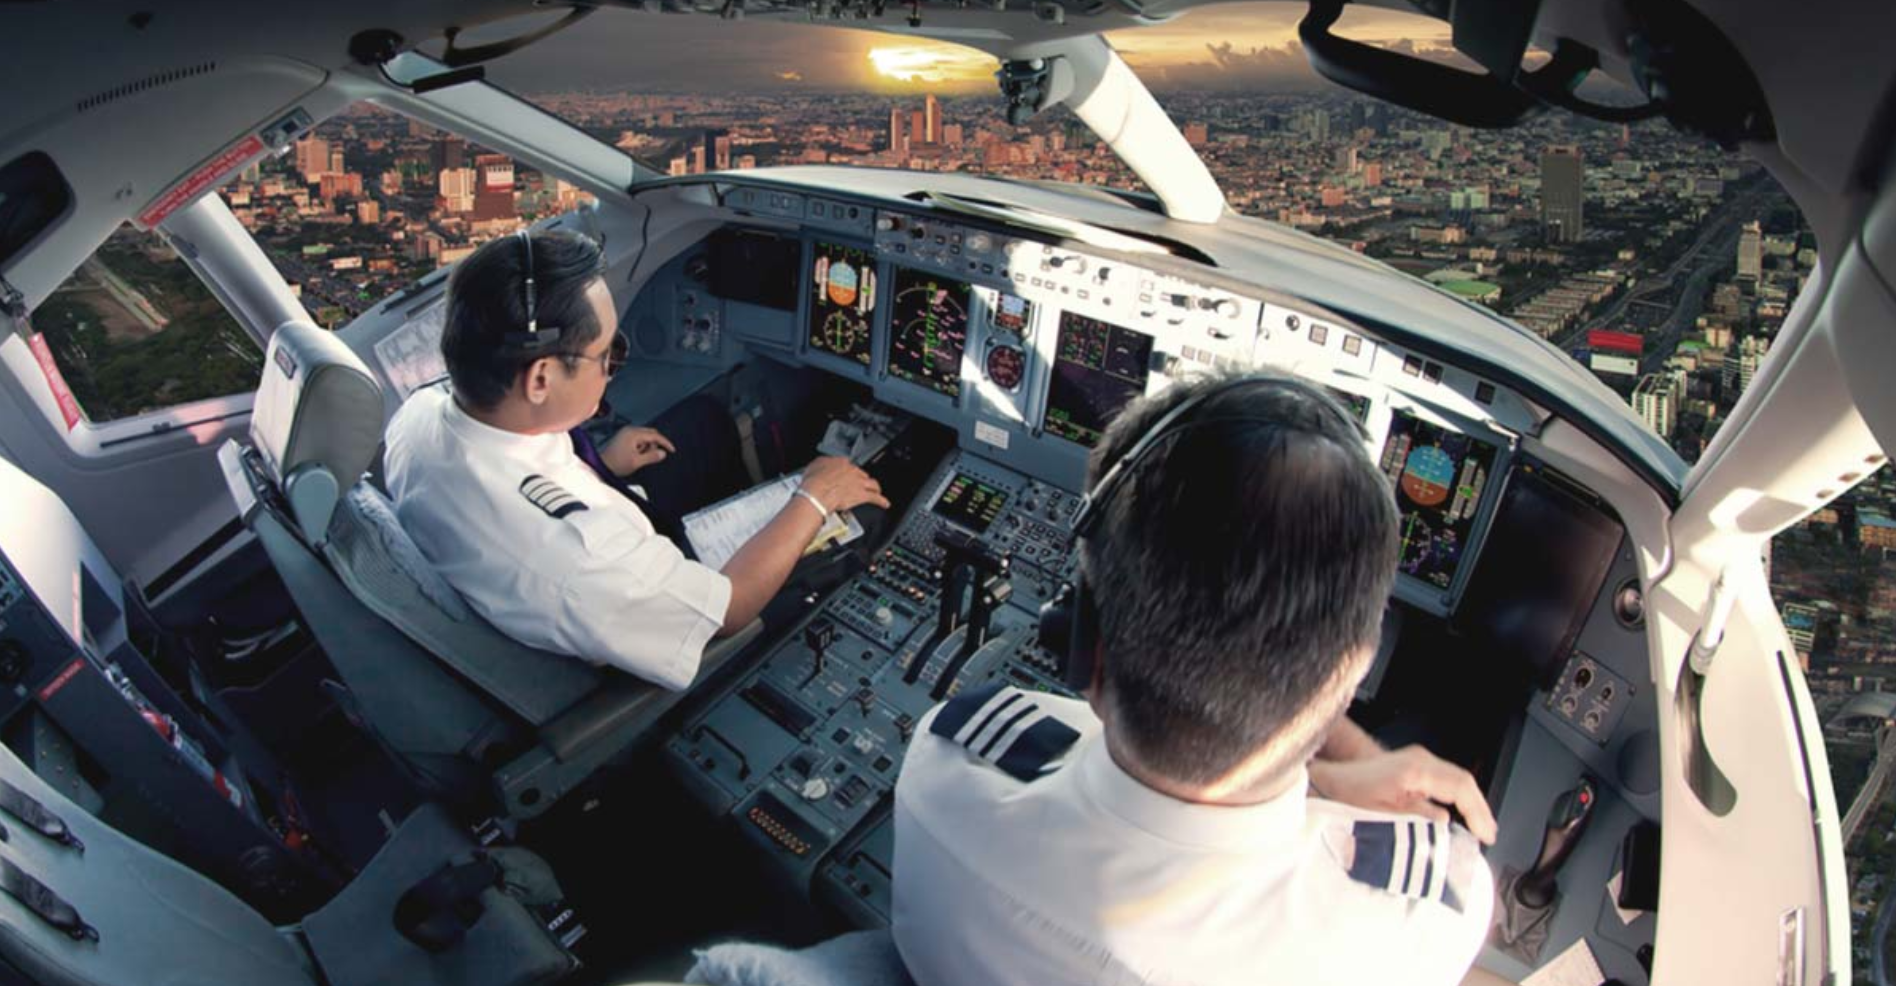 【元飛行教官の証言】飛行機の操縦士になれるかどうかは「金」と「運」次第